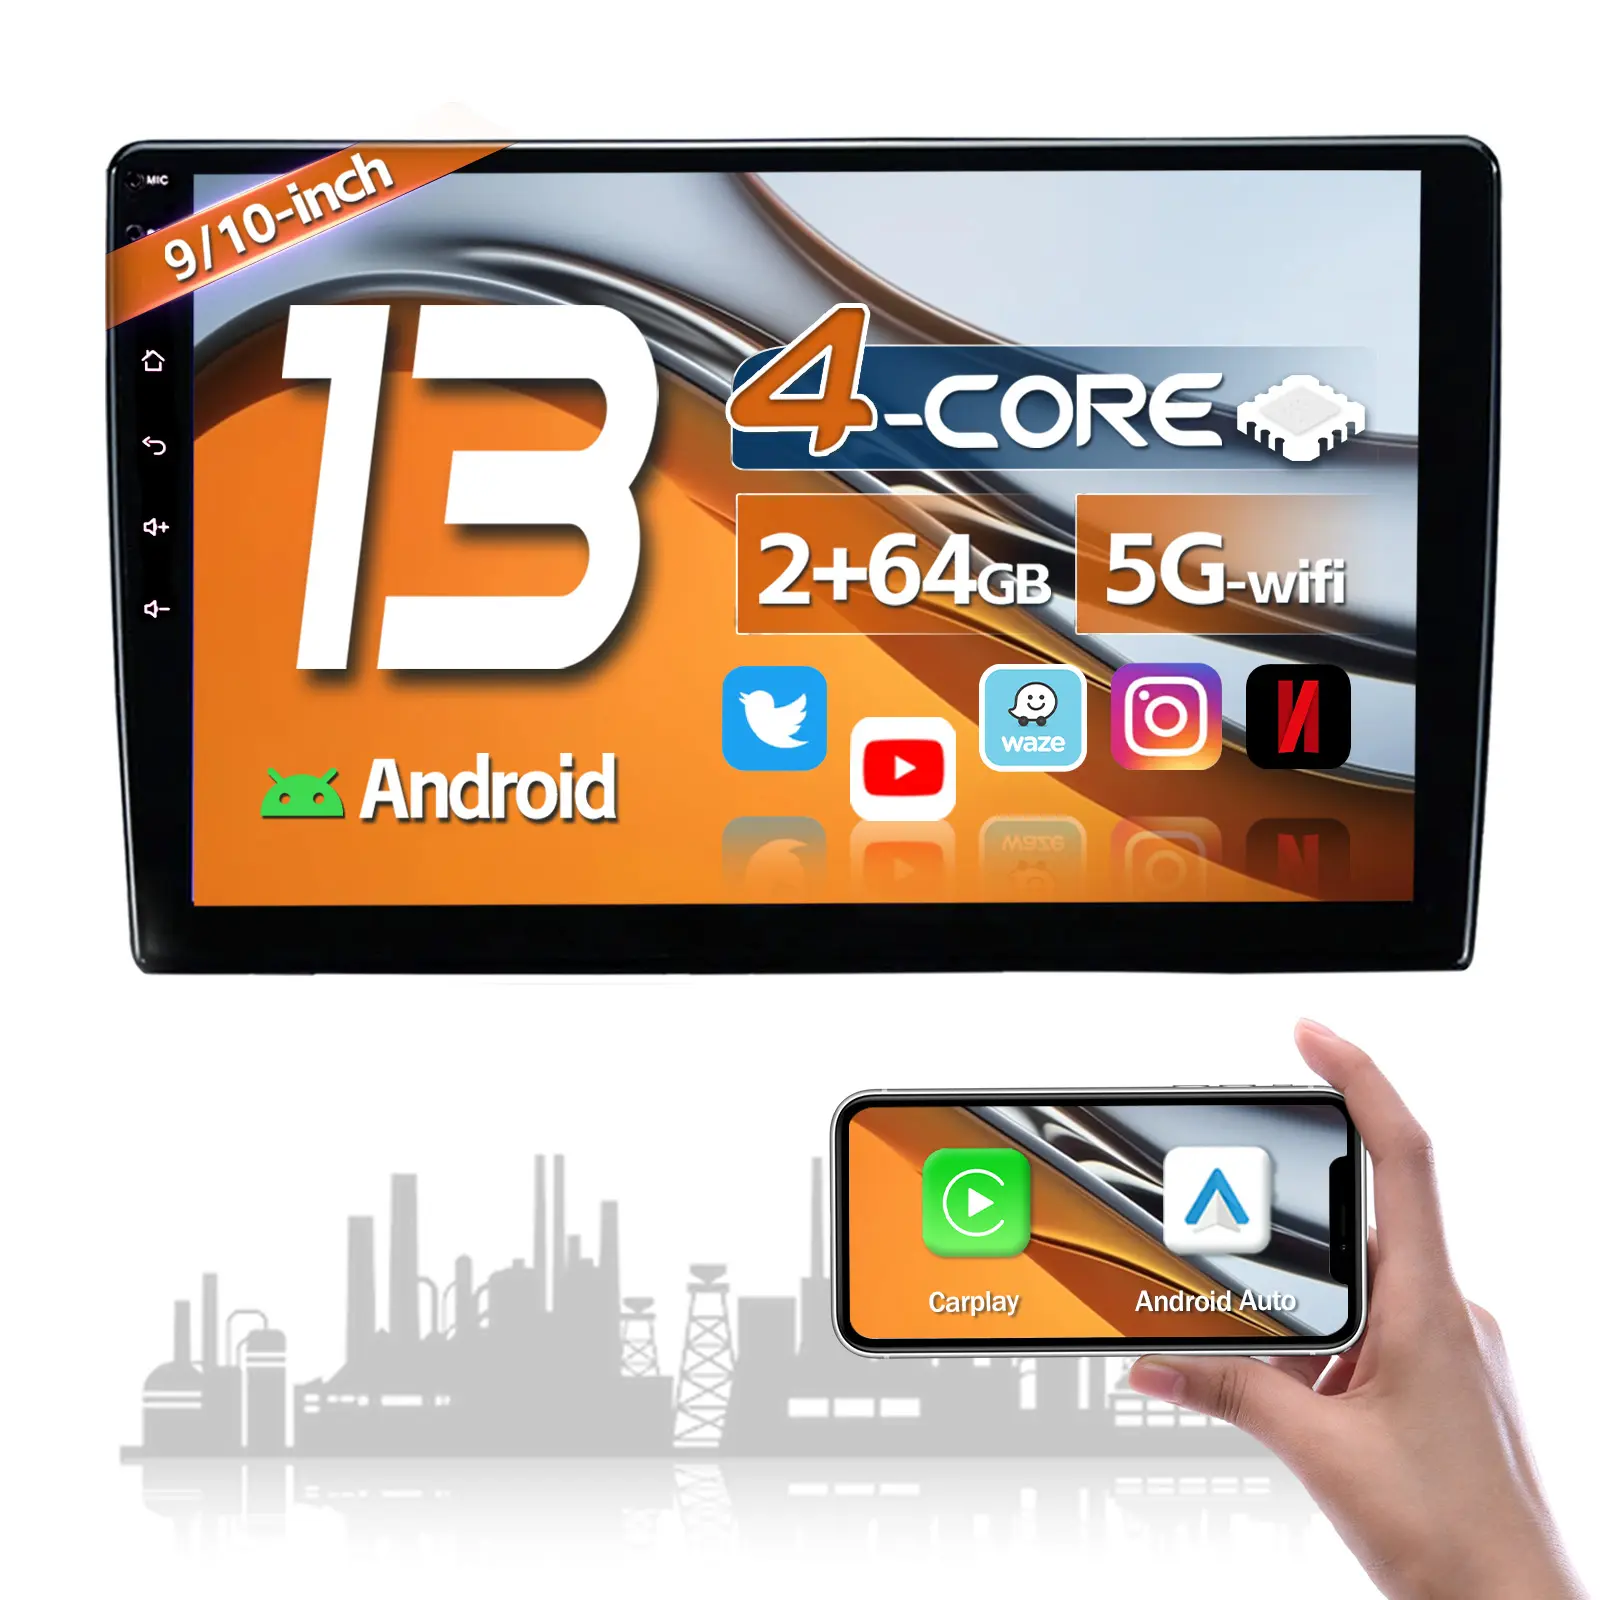 Stereo 2 + 64g Android 13.0 Painel de Rádio Do Carro Navegação GPS Carplay Multimedia Player CN326 4 Core Universal Simple Soft KS 9"